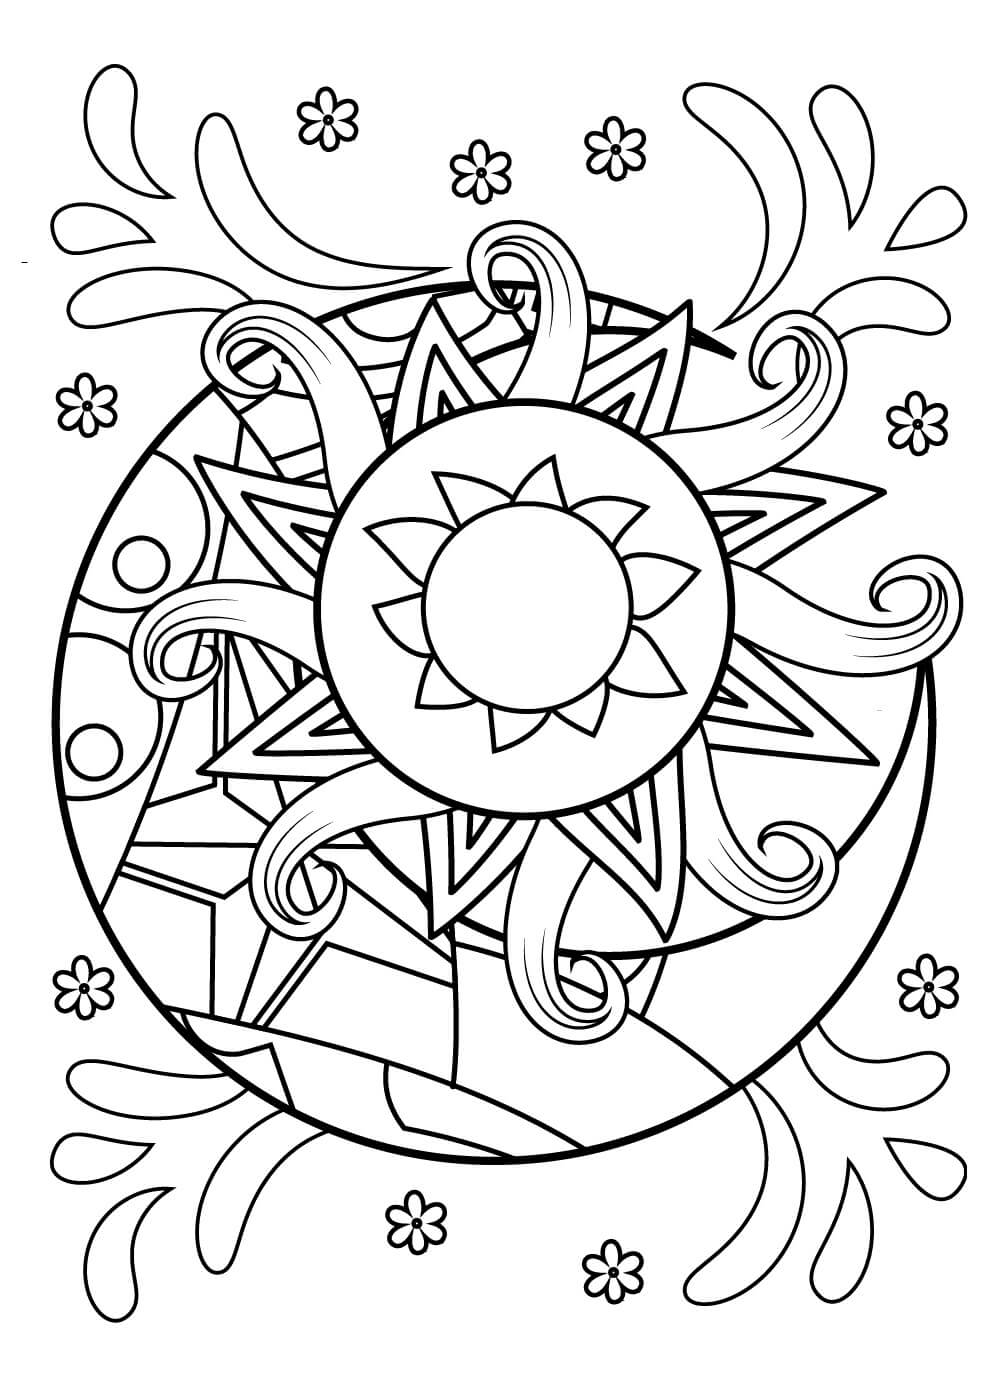 Mandala Sun And Moon Coloring Page - Sheet 3 Mandalas